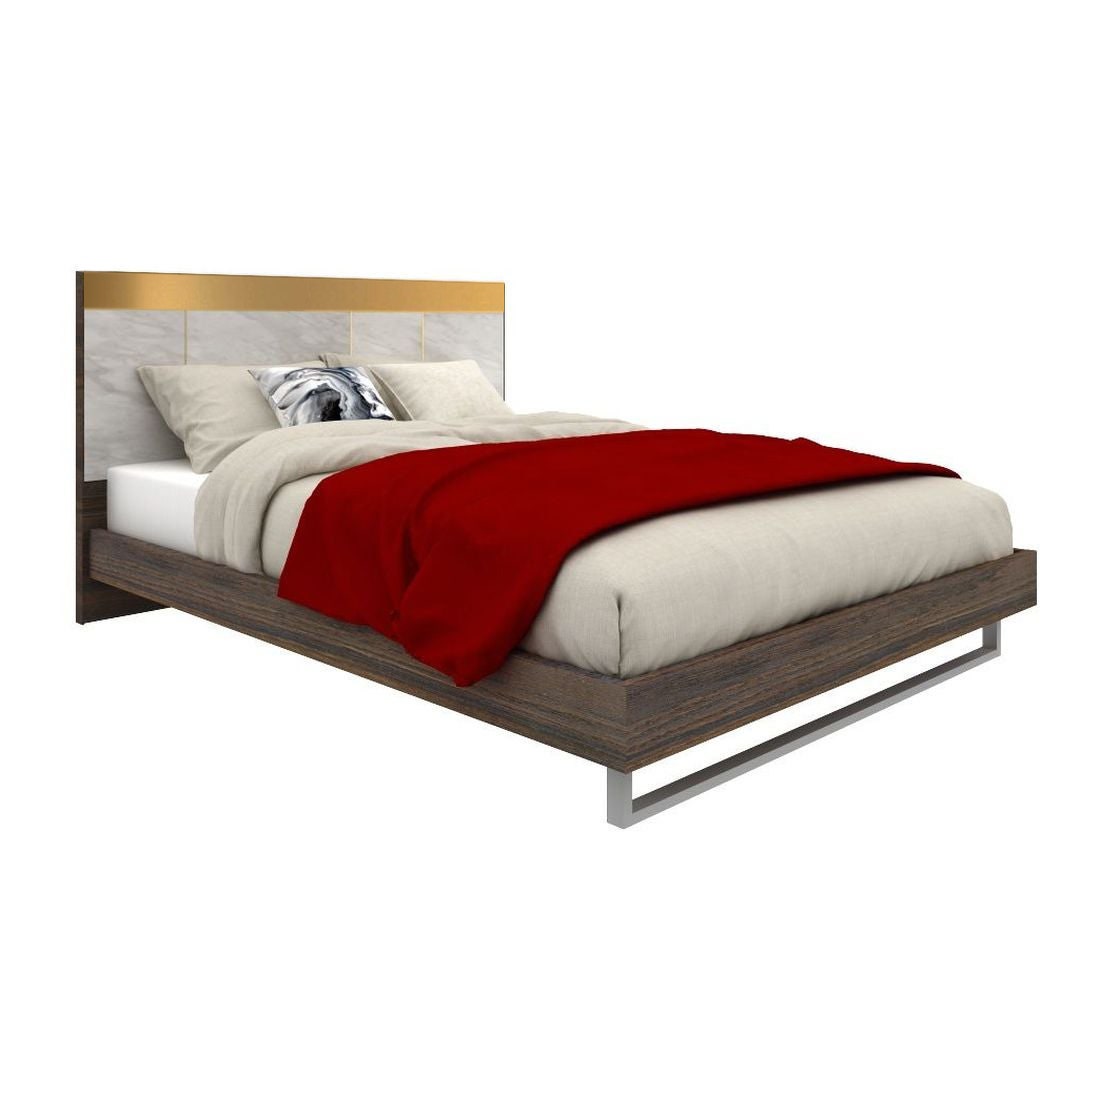 เตียงนอน 6 ฟุต รุ่น Reiss-B สีไม้เข้ม2